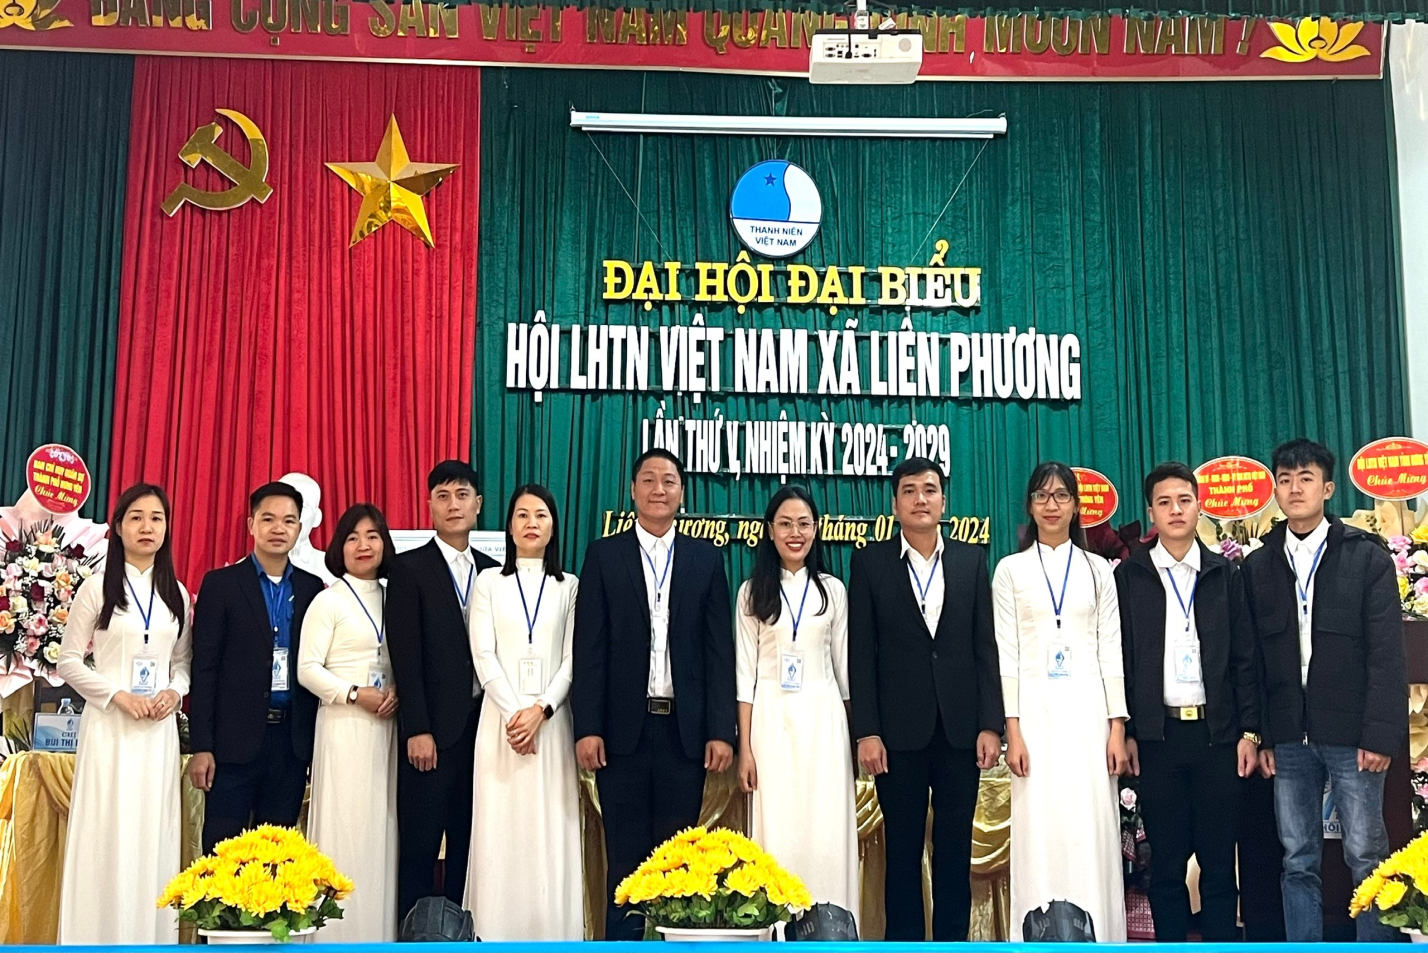 Đại hội đại biểu Hội Hội Liên hiệp thanh niên Việt Nam xã Liên Phương  lần thứ V, nhiệm kì 2024 – 2029